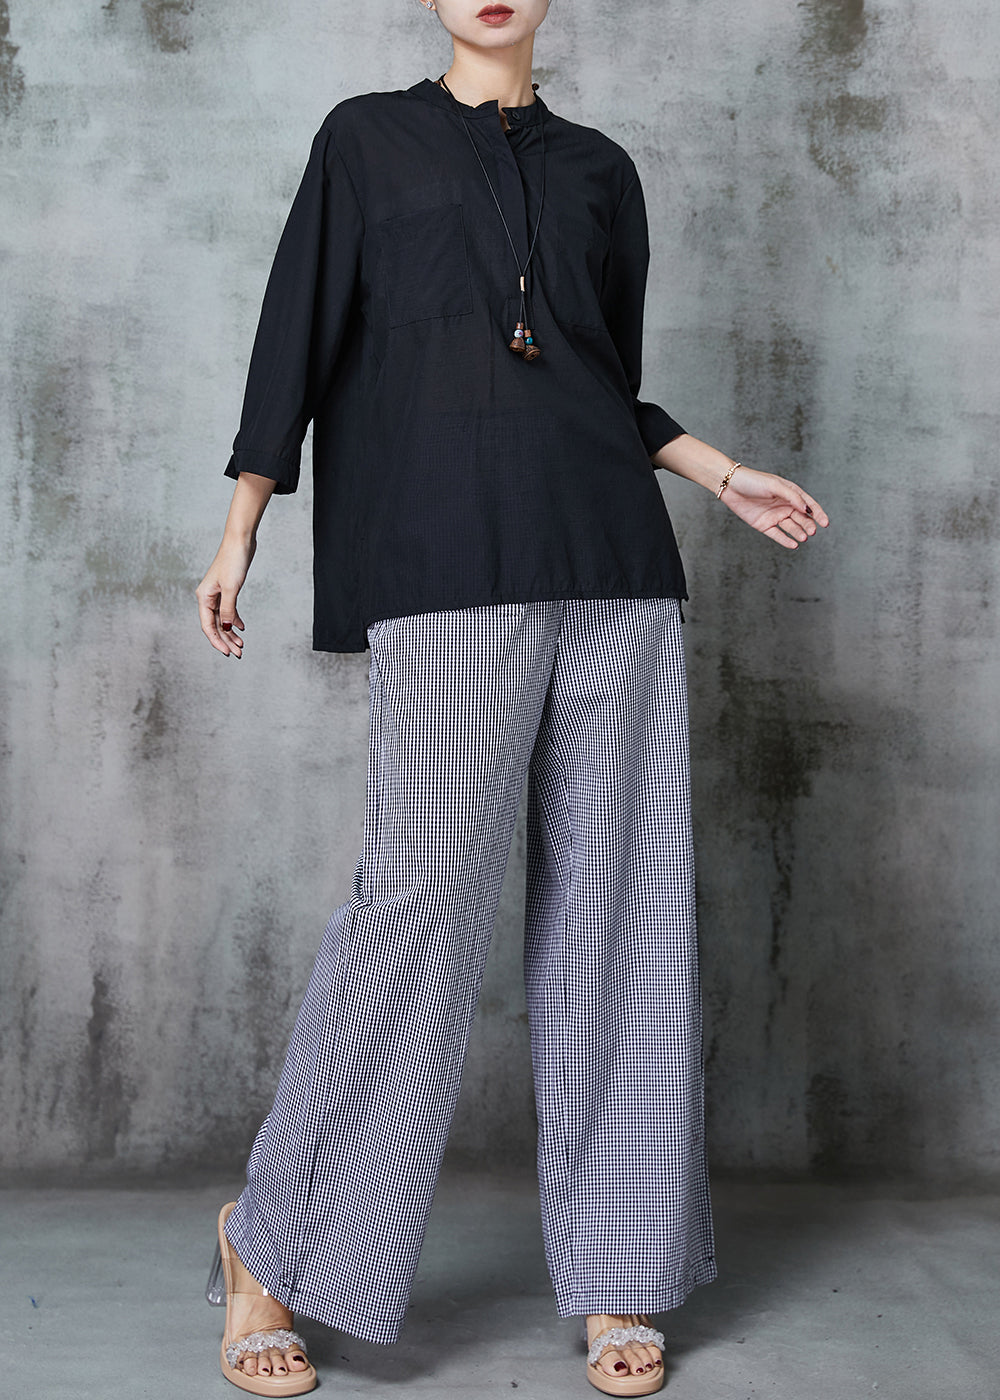 Plus Size Black Oversized Plaid Linen 2 Piece Outfit Spring